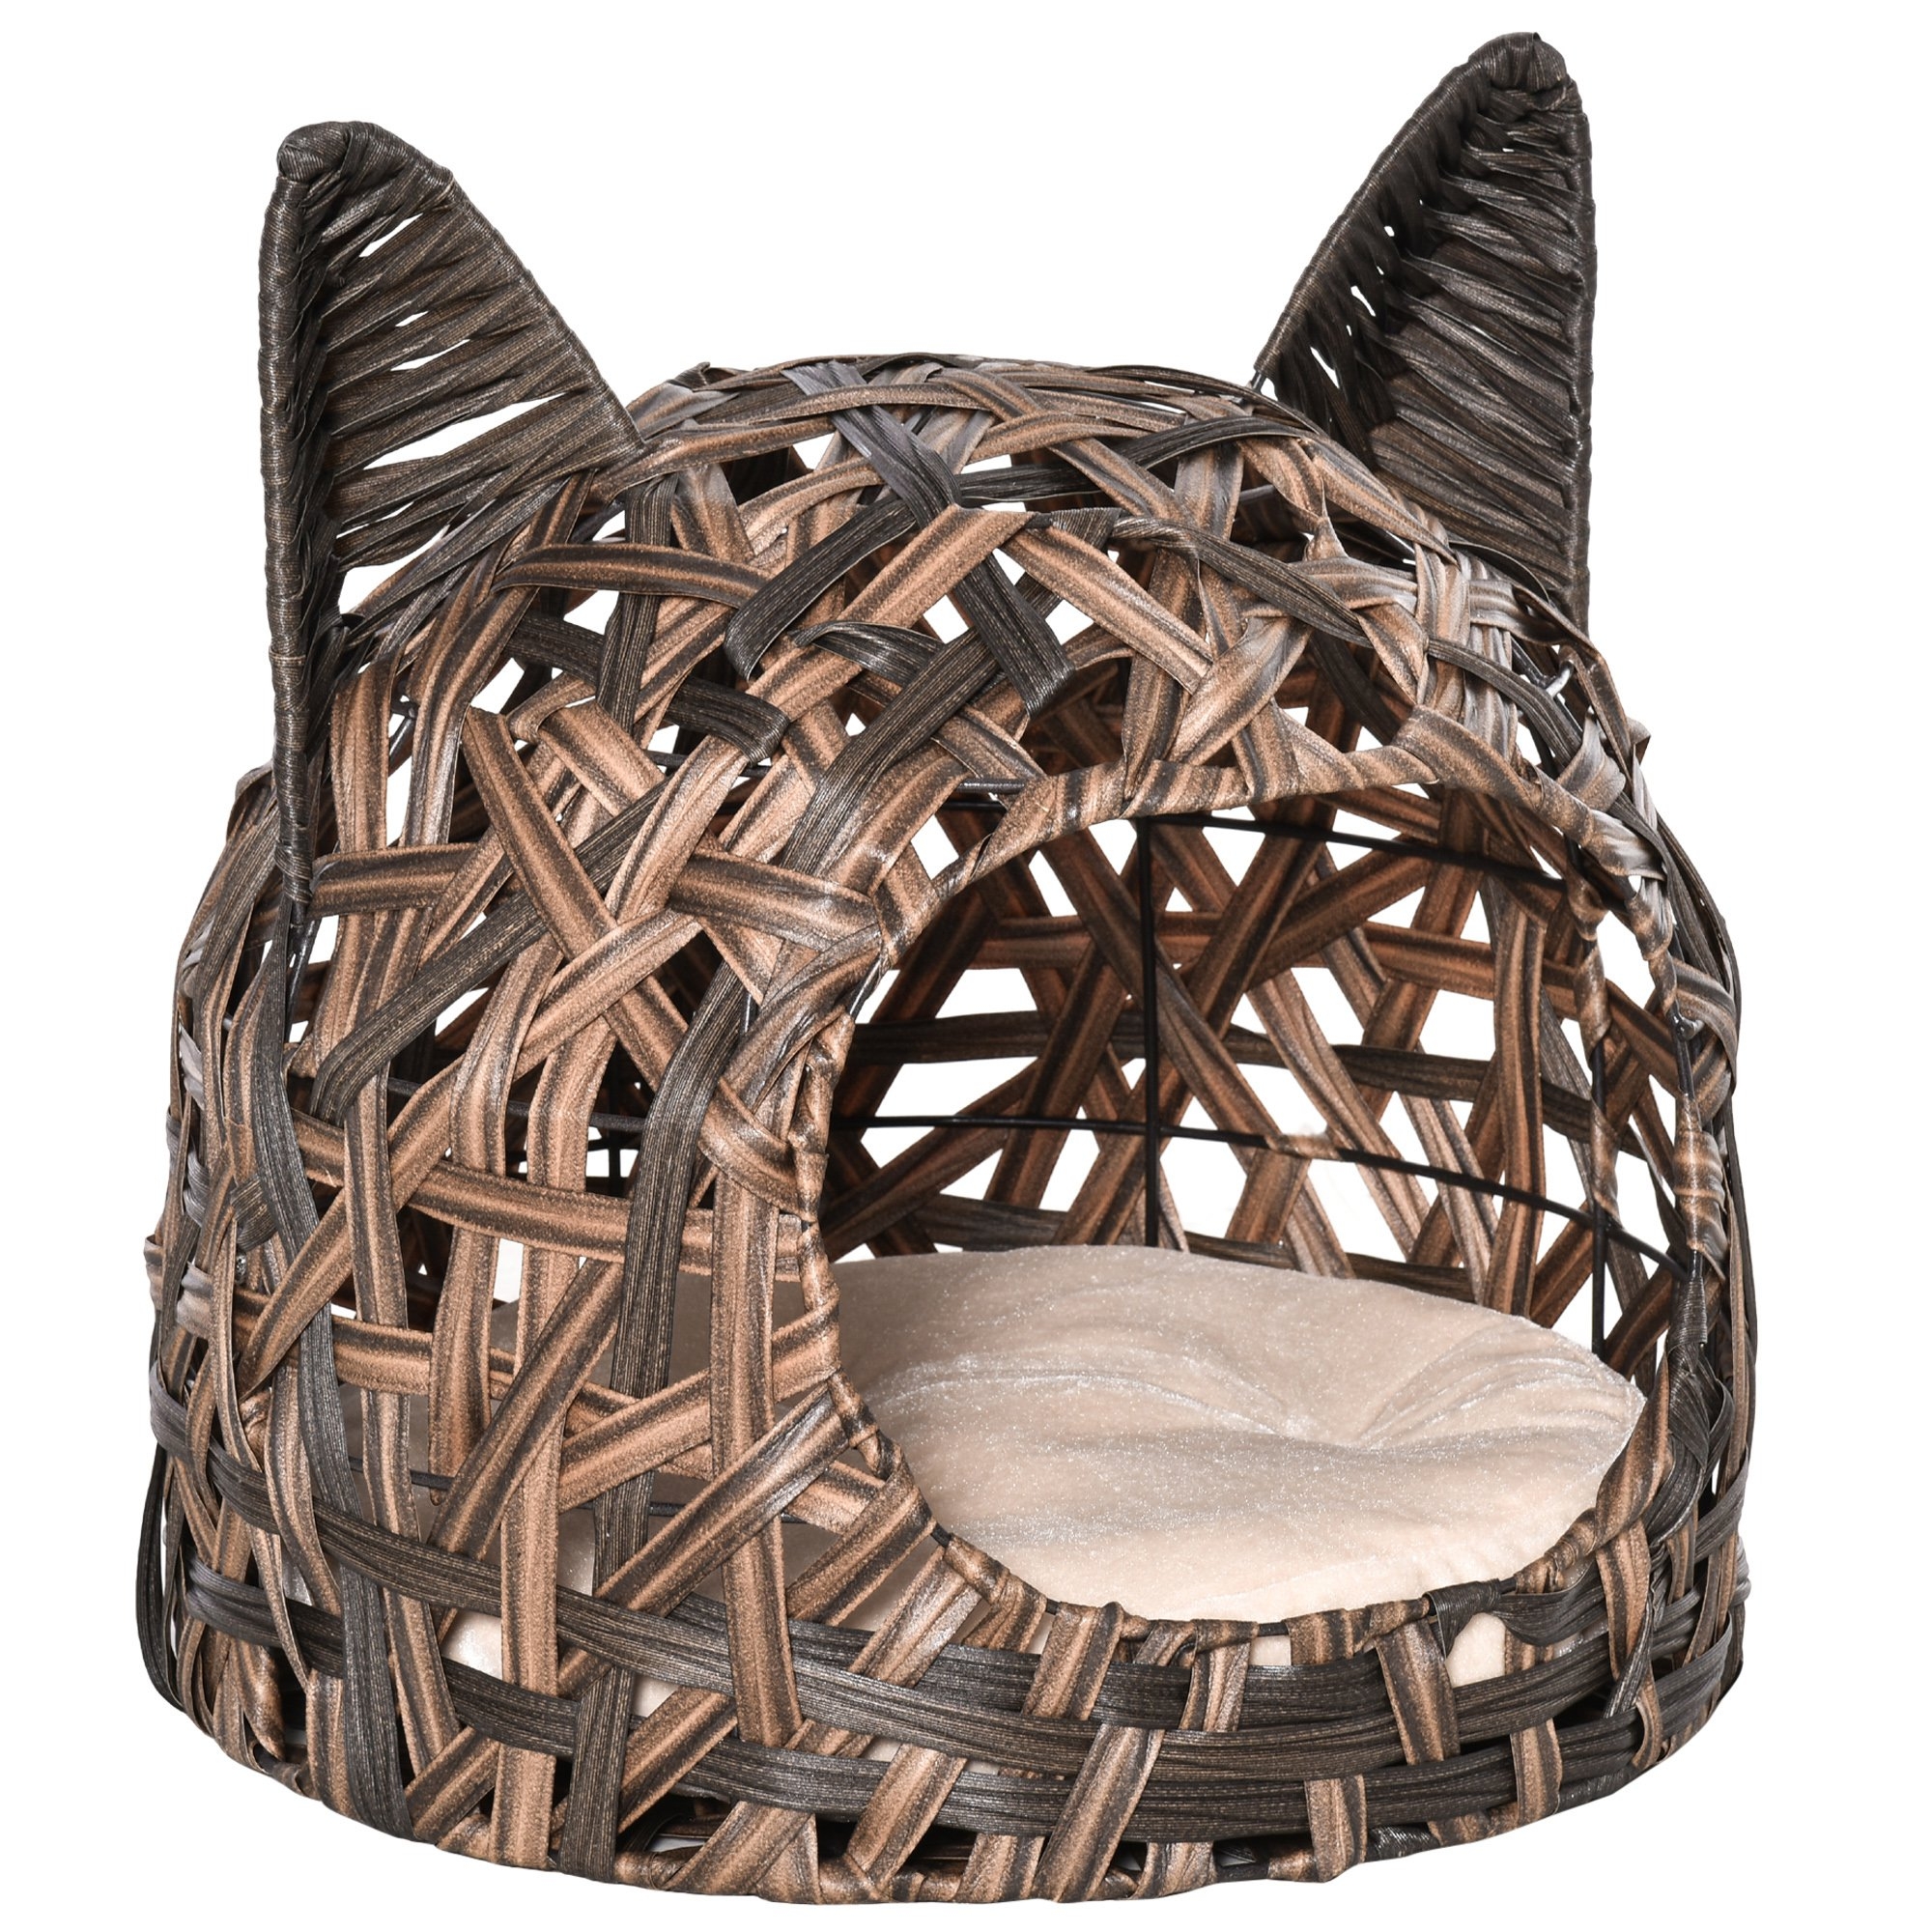 pawhut cuccia per gatti, cesta per gatti adulti fino 4.5kg, cesta in vimini sintetico a forma di gatto, marrone